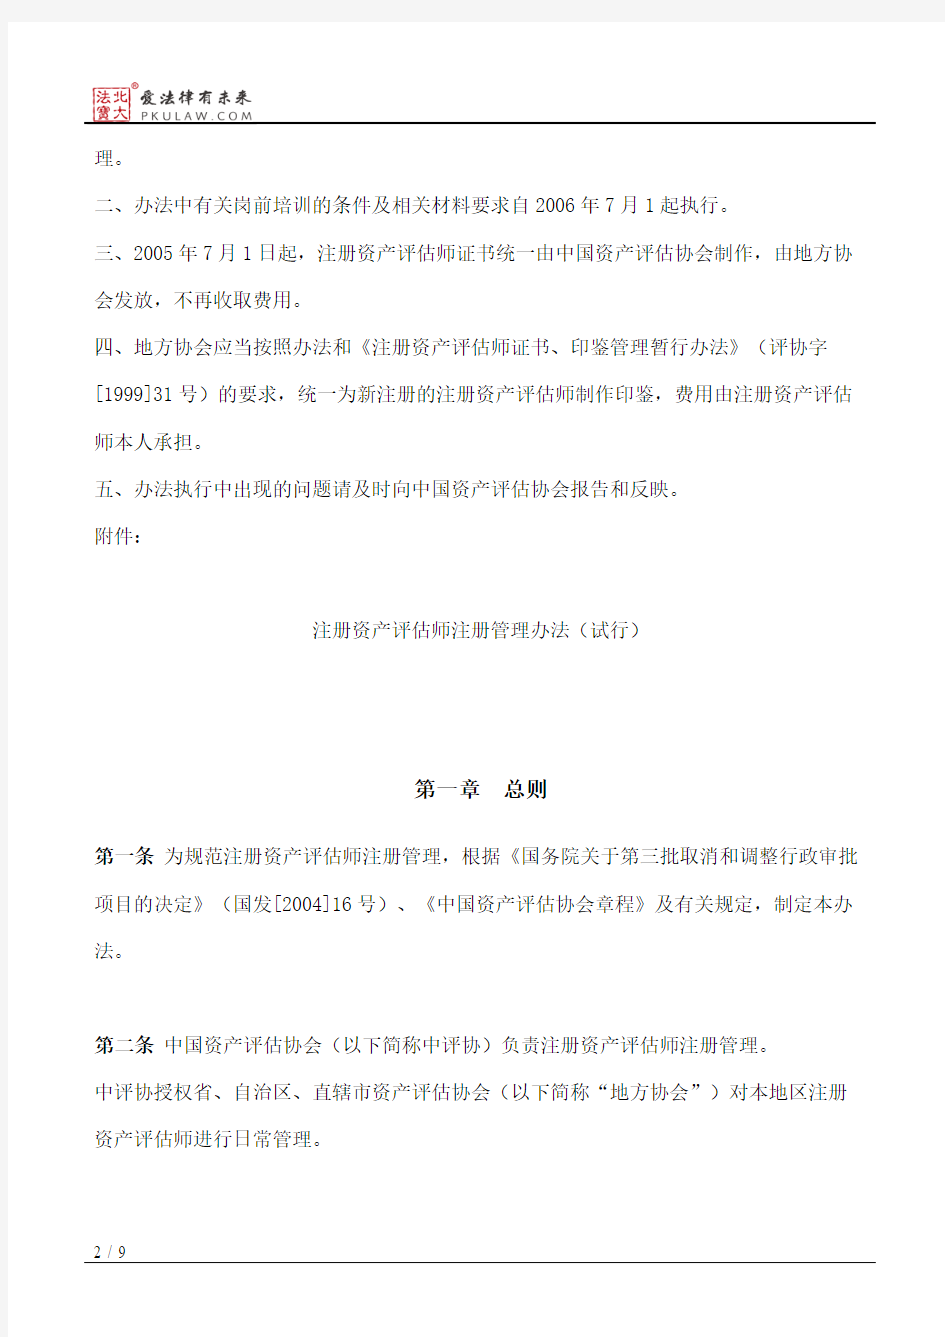 中国资产评估协会关于印发《注册资产评估师注册管理办法(试行)》的通知